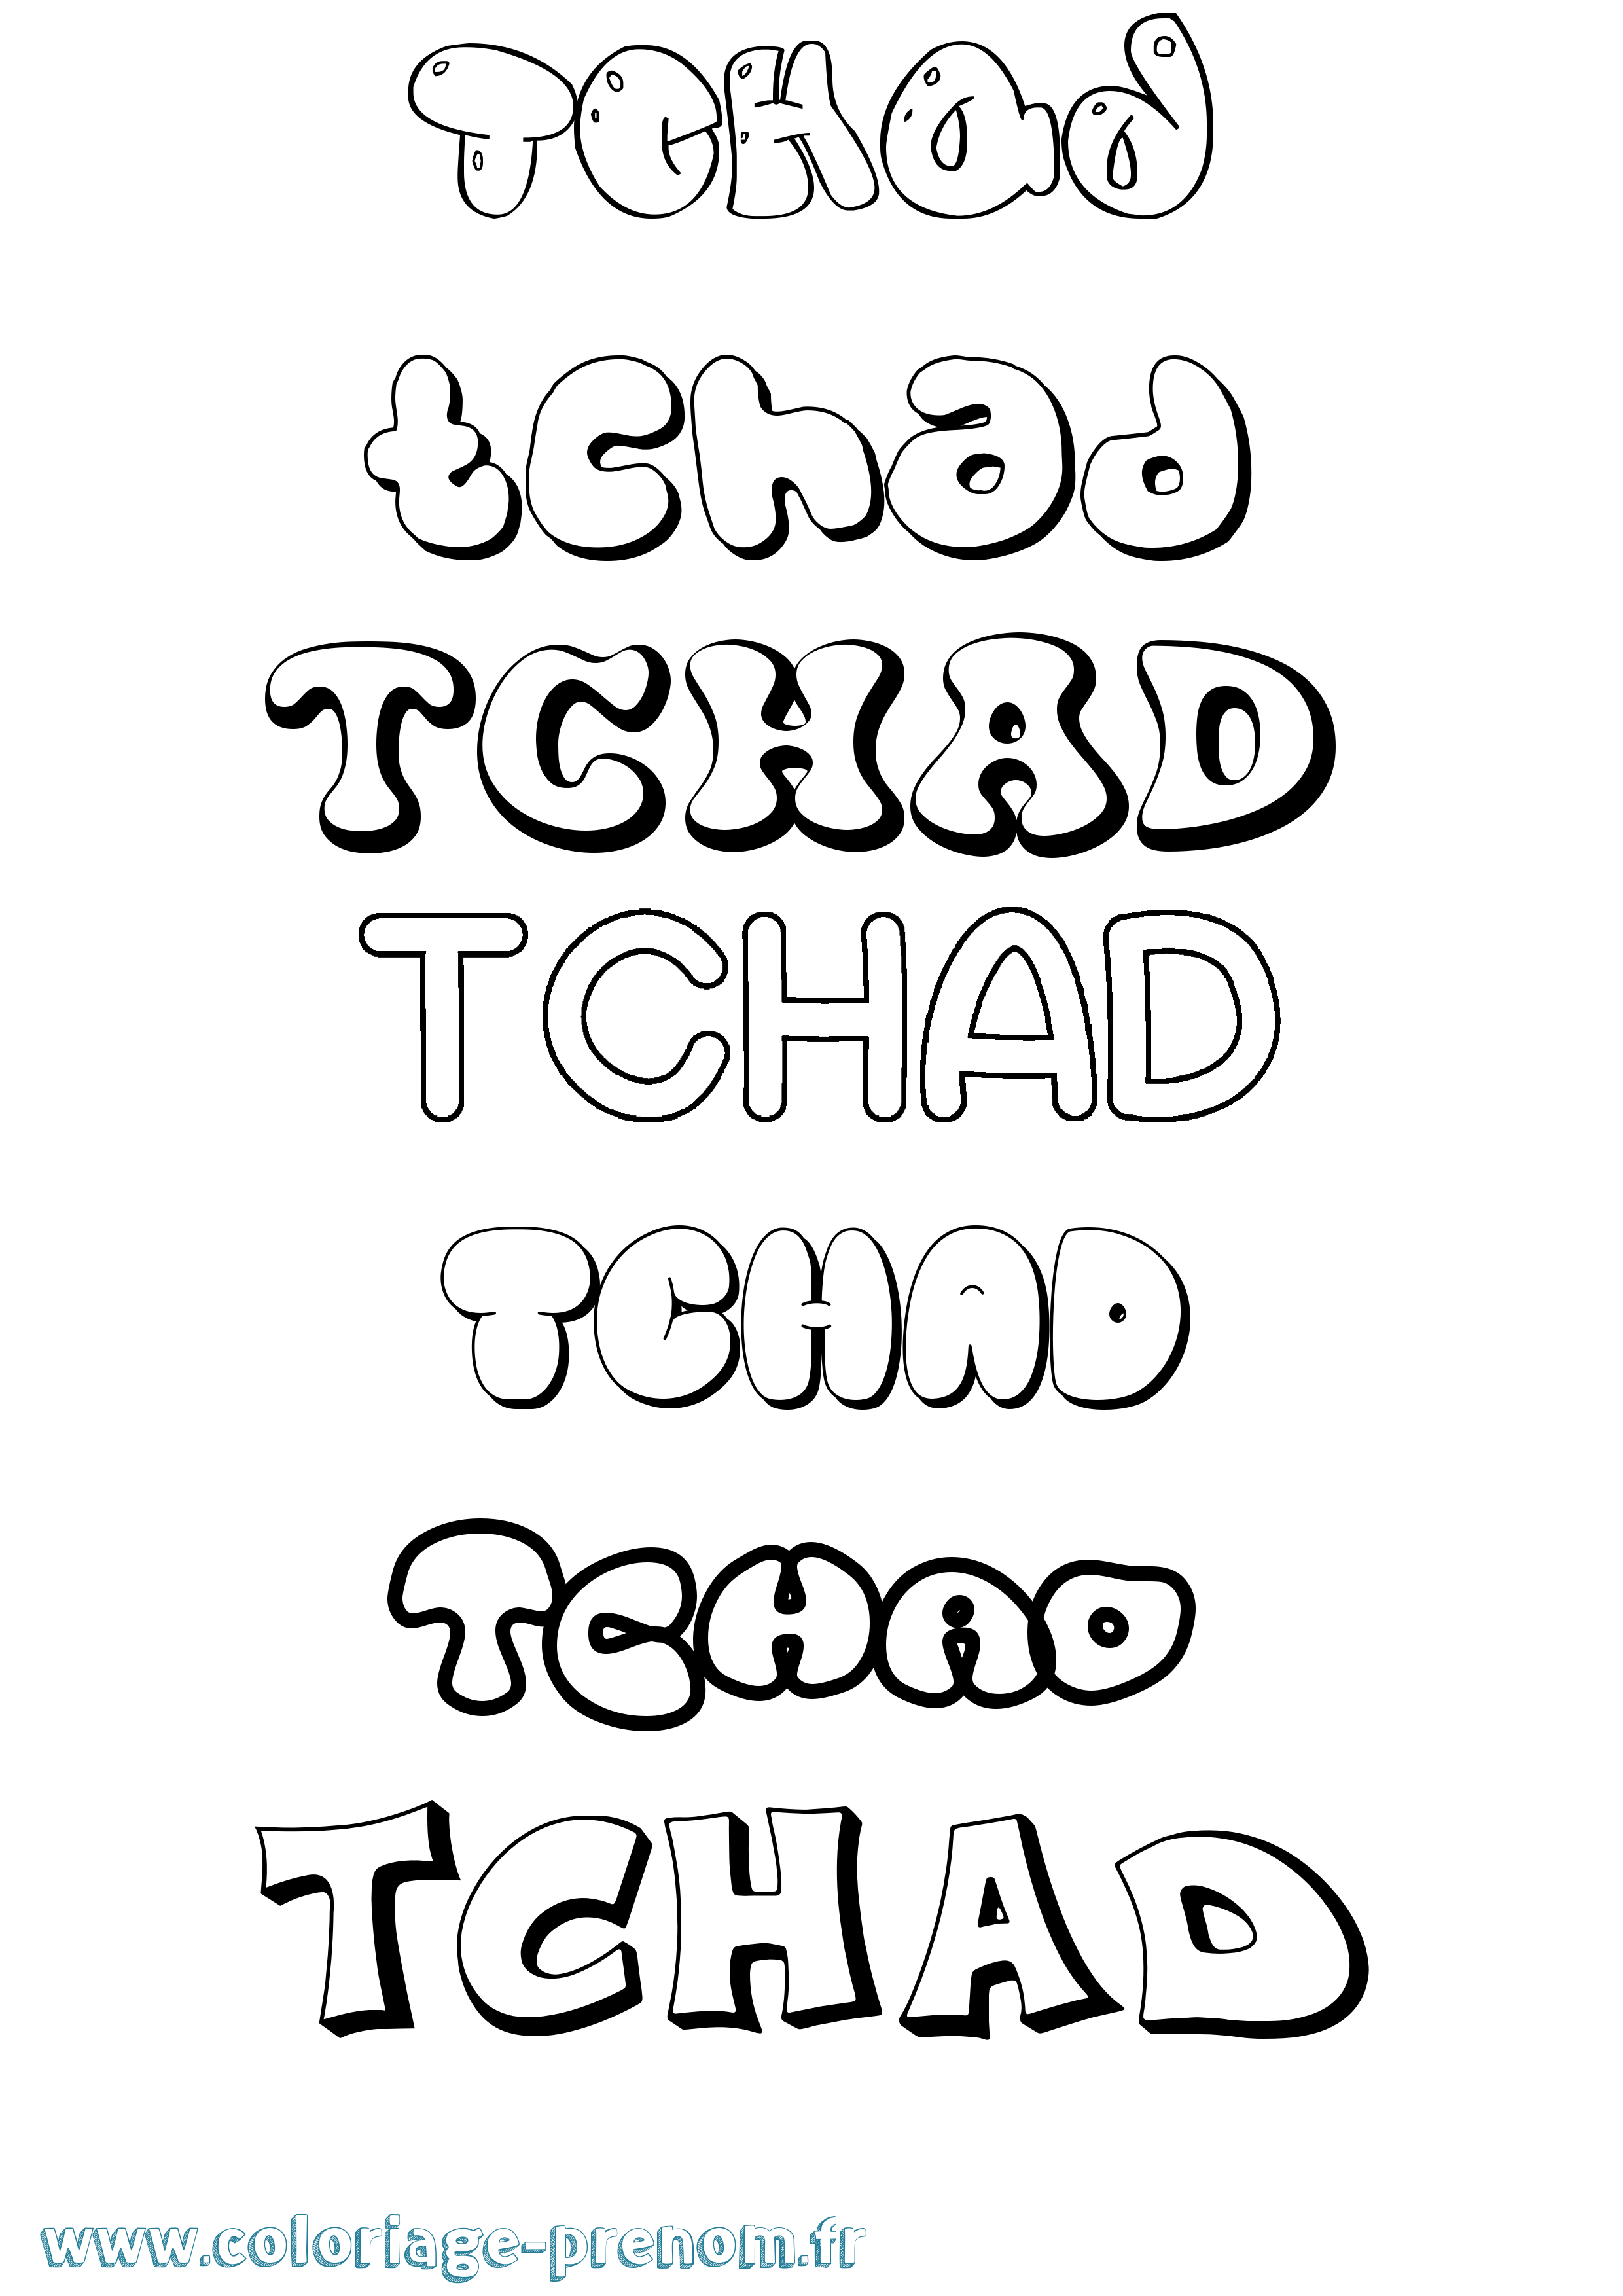 Coloriage prénom Tchad Bubble